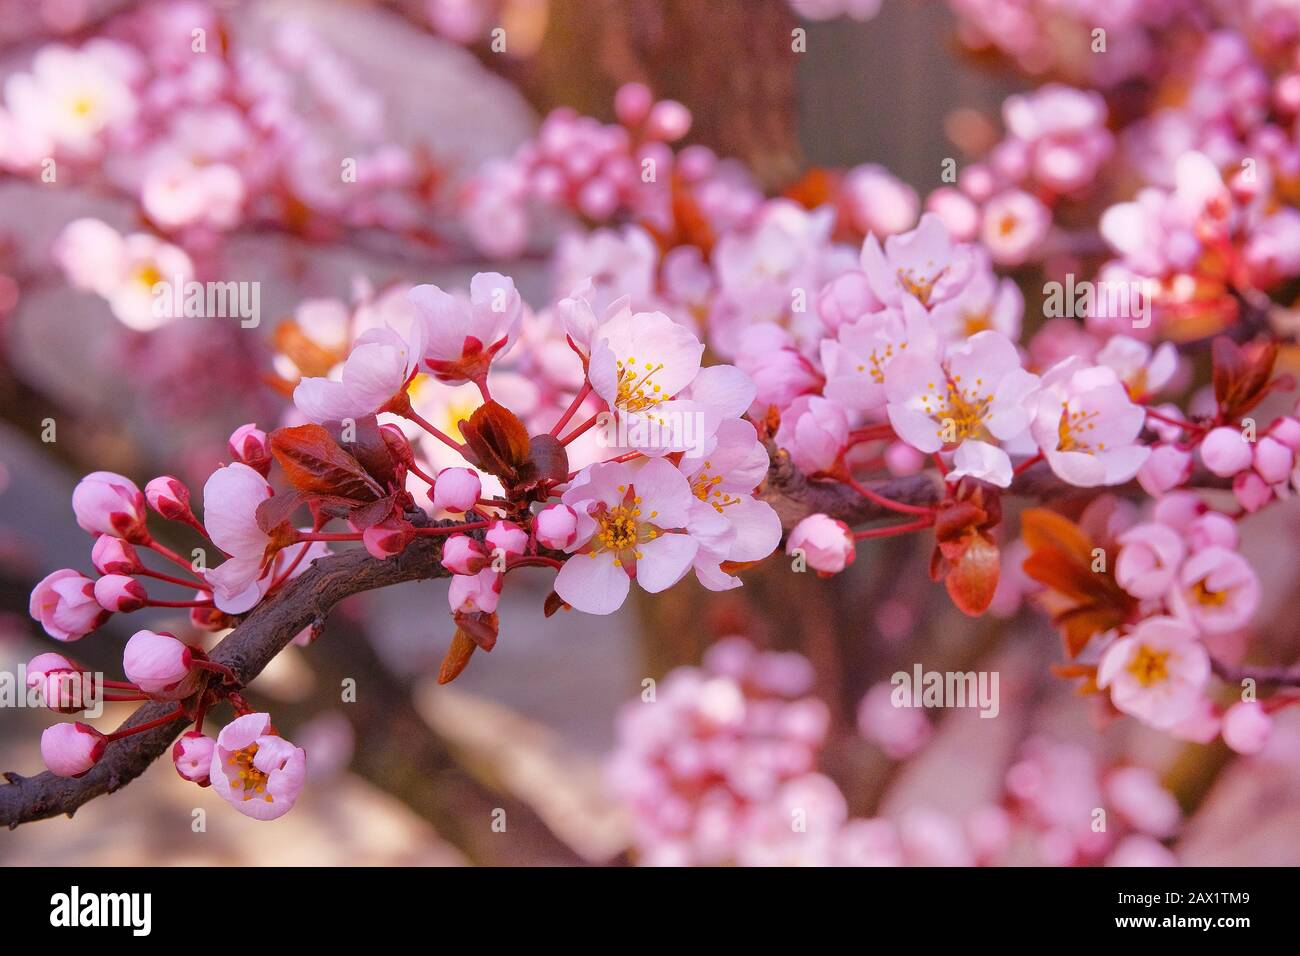 Aprikosenblüten mit rosafarbenen Kronblättern. Frühlingshintergrund der Natur, rosafarbenes Bokeh. Grußkarte für den Tag der Frauen. Blühender japanischer Garten im Frühling Stockfoto